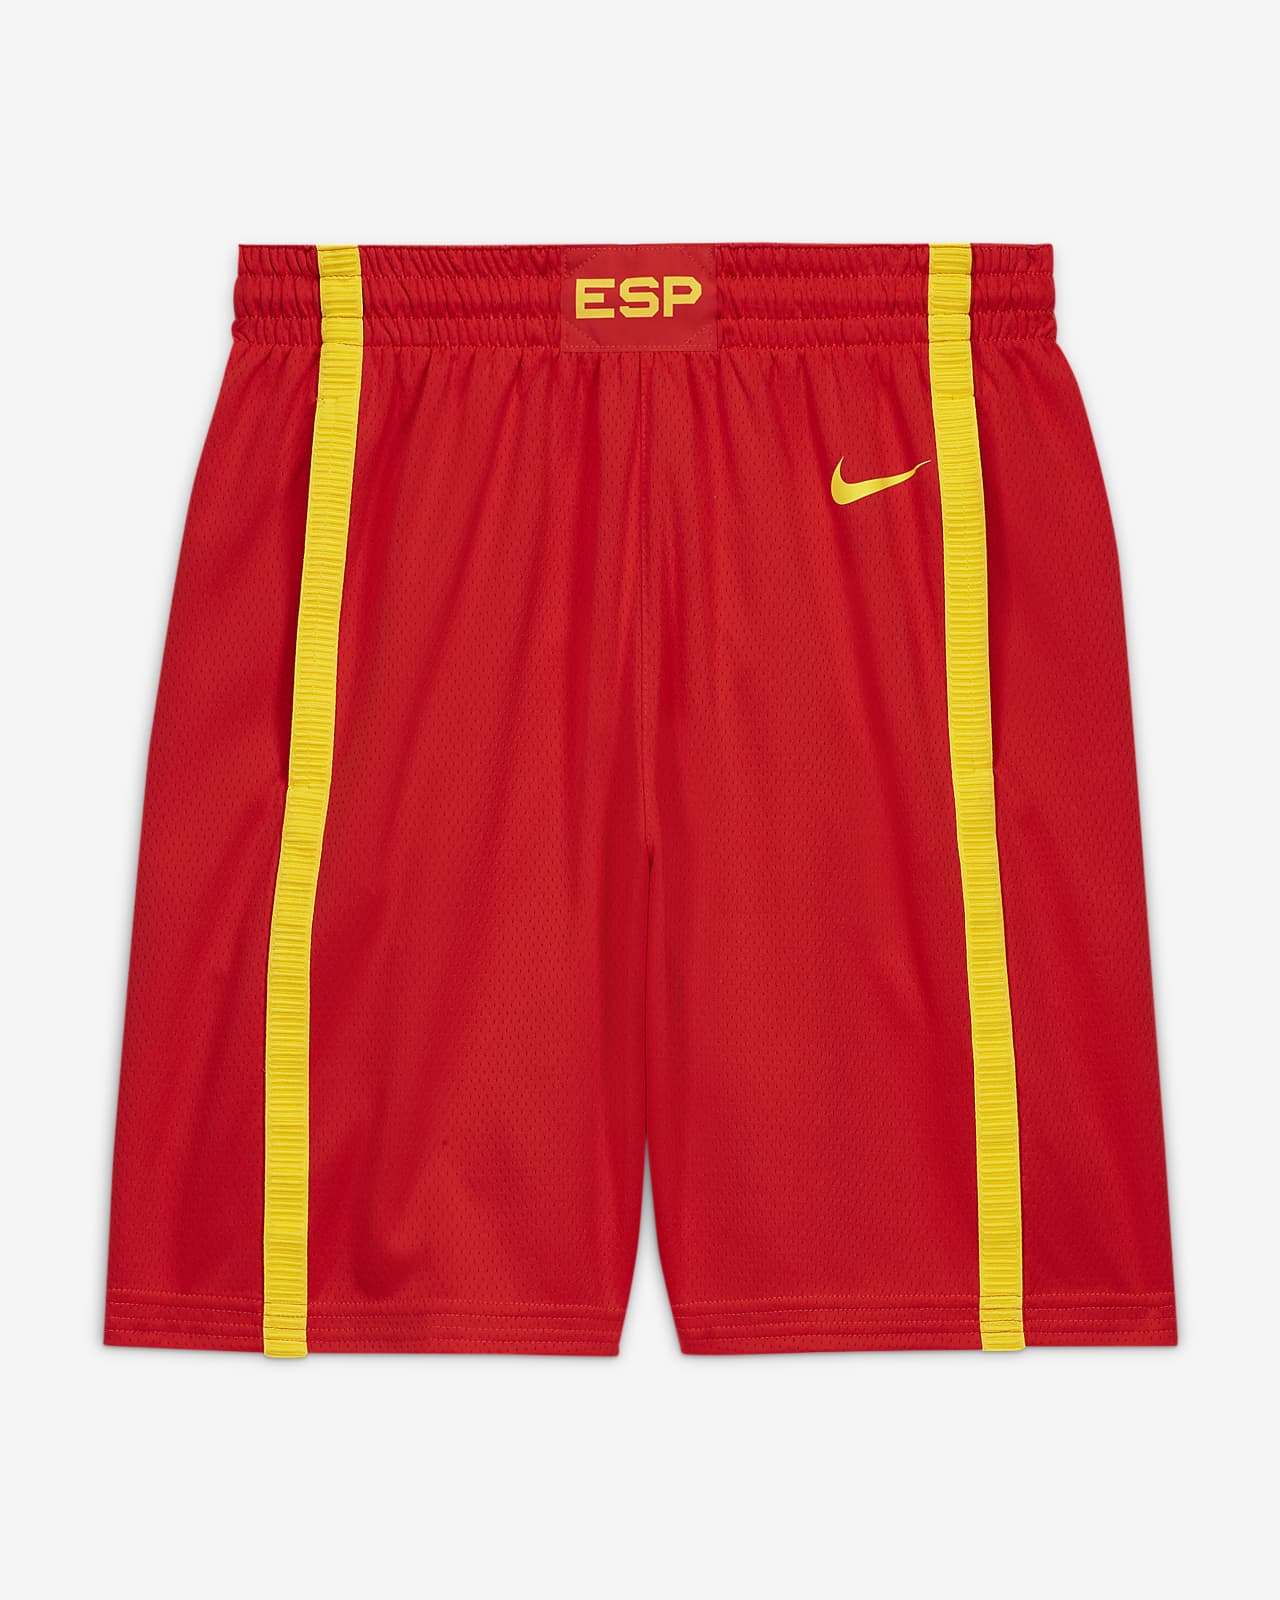 Spanien Nike (Road) Limited Herren-Basketballshorts